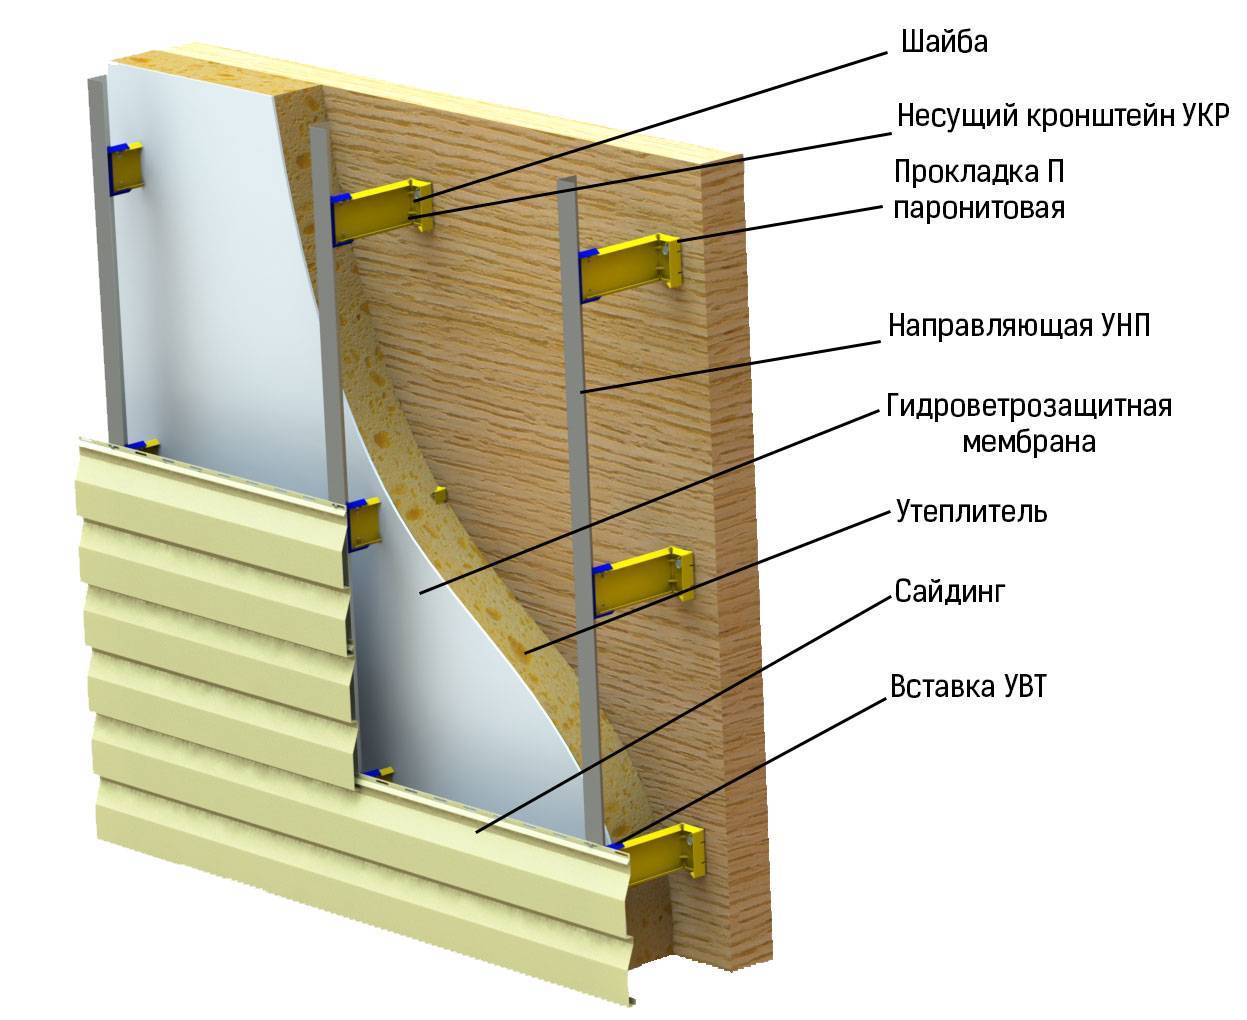 Блок хаус деревянный. как крепить блок-хаус снаружи — работы по внешней отделке дома